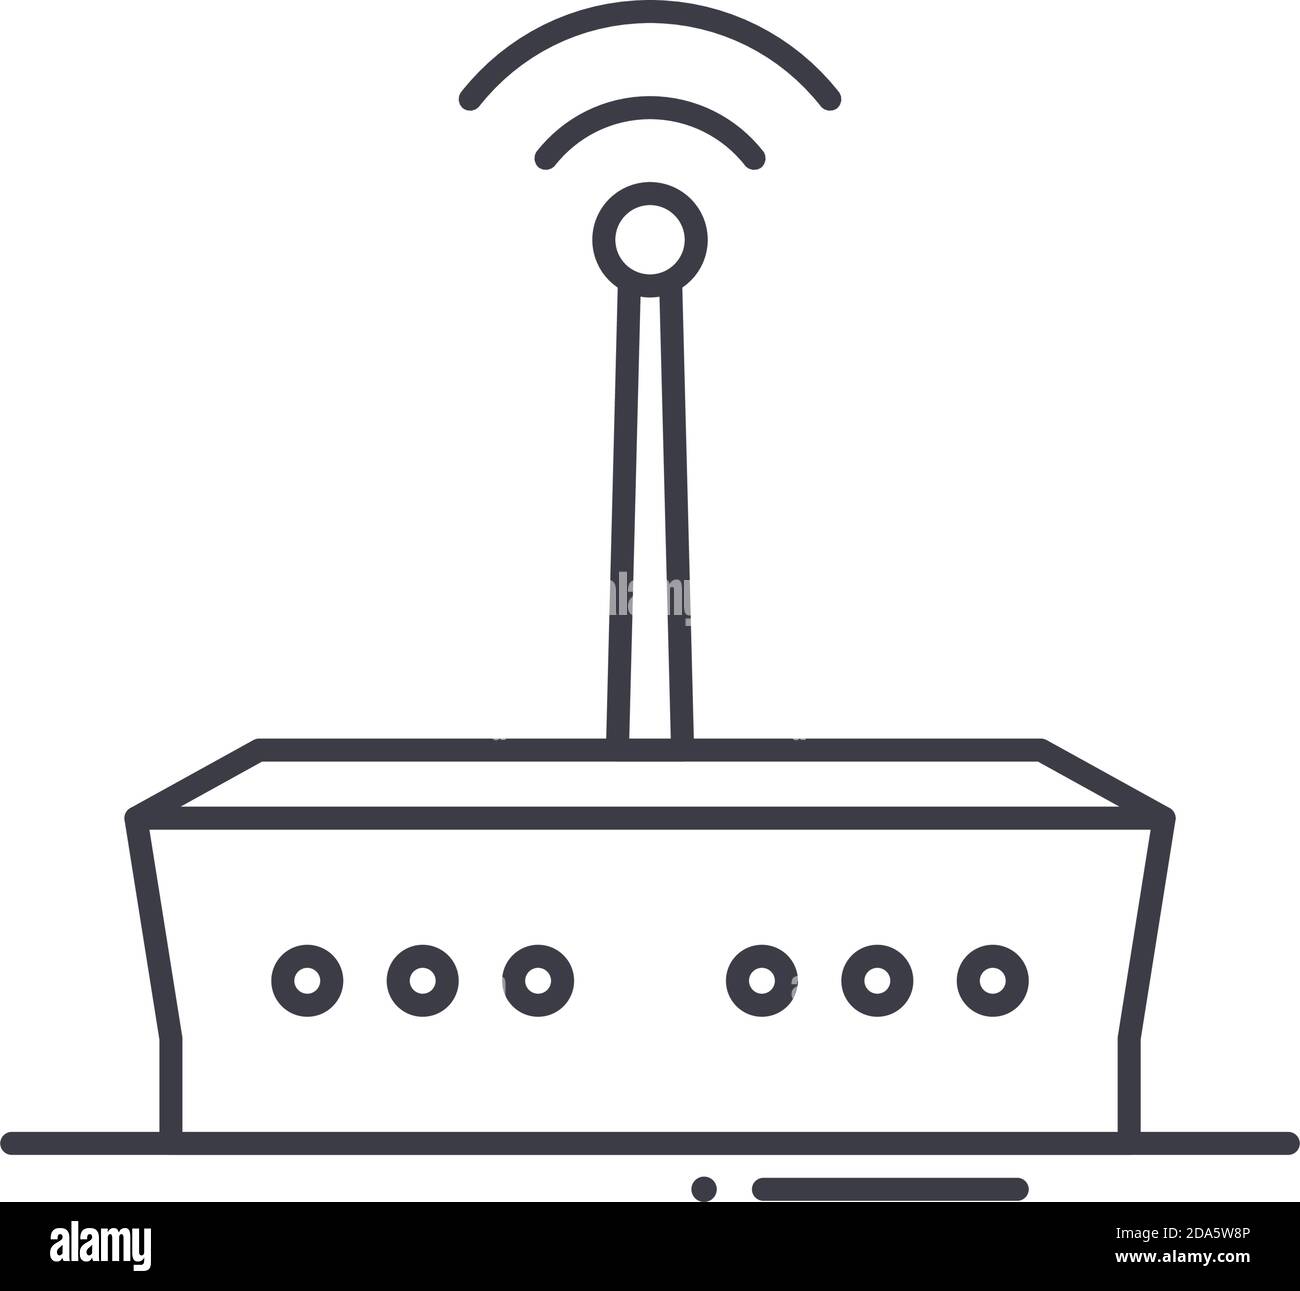 icône de routeur wifi 5g, illustration isolée linéaire, vecteur de ligne mince, panneau de conception web, symbole de concept de contour avec trait modifiable sur fond blanc. Illustration de Vecteur